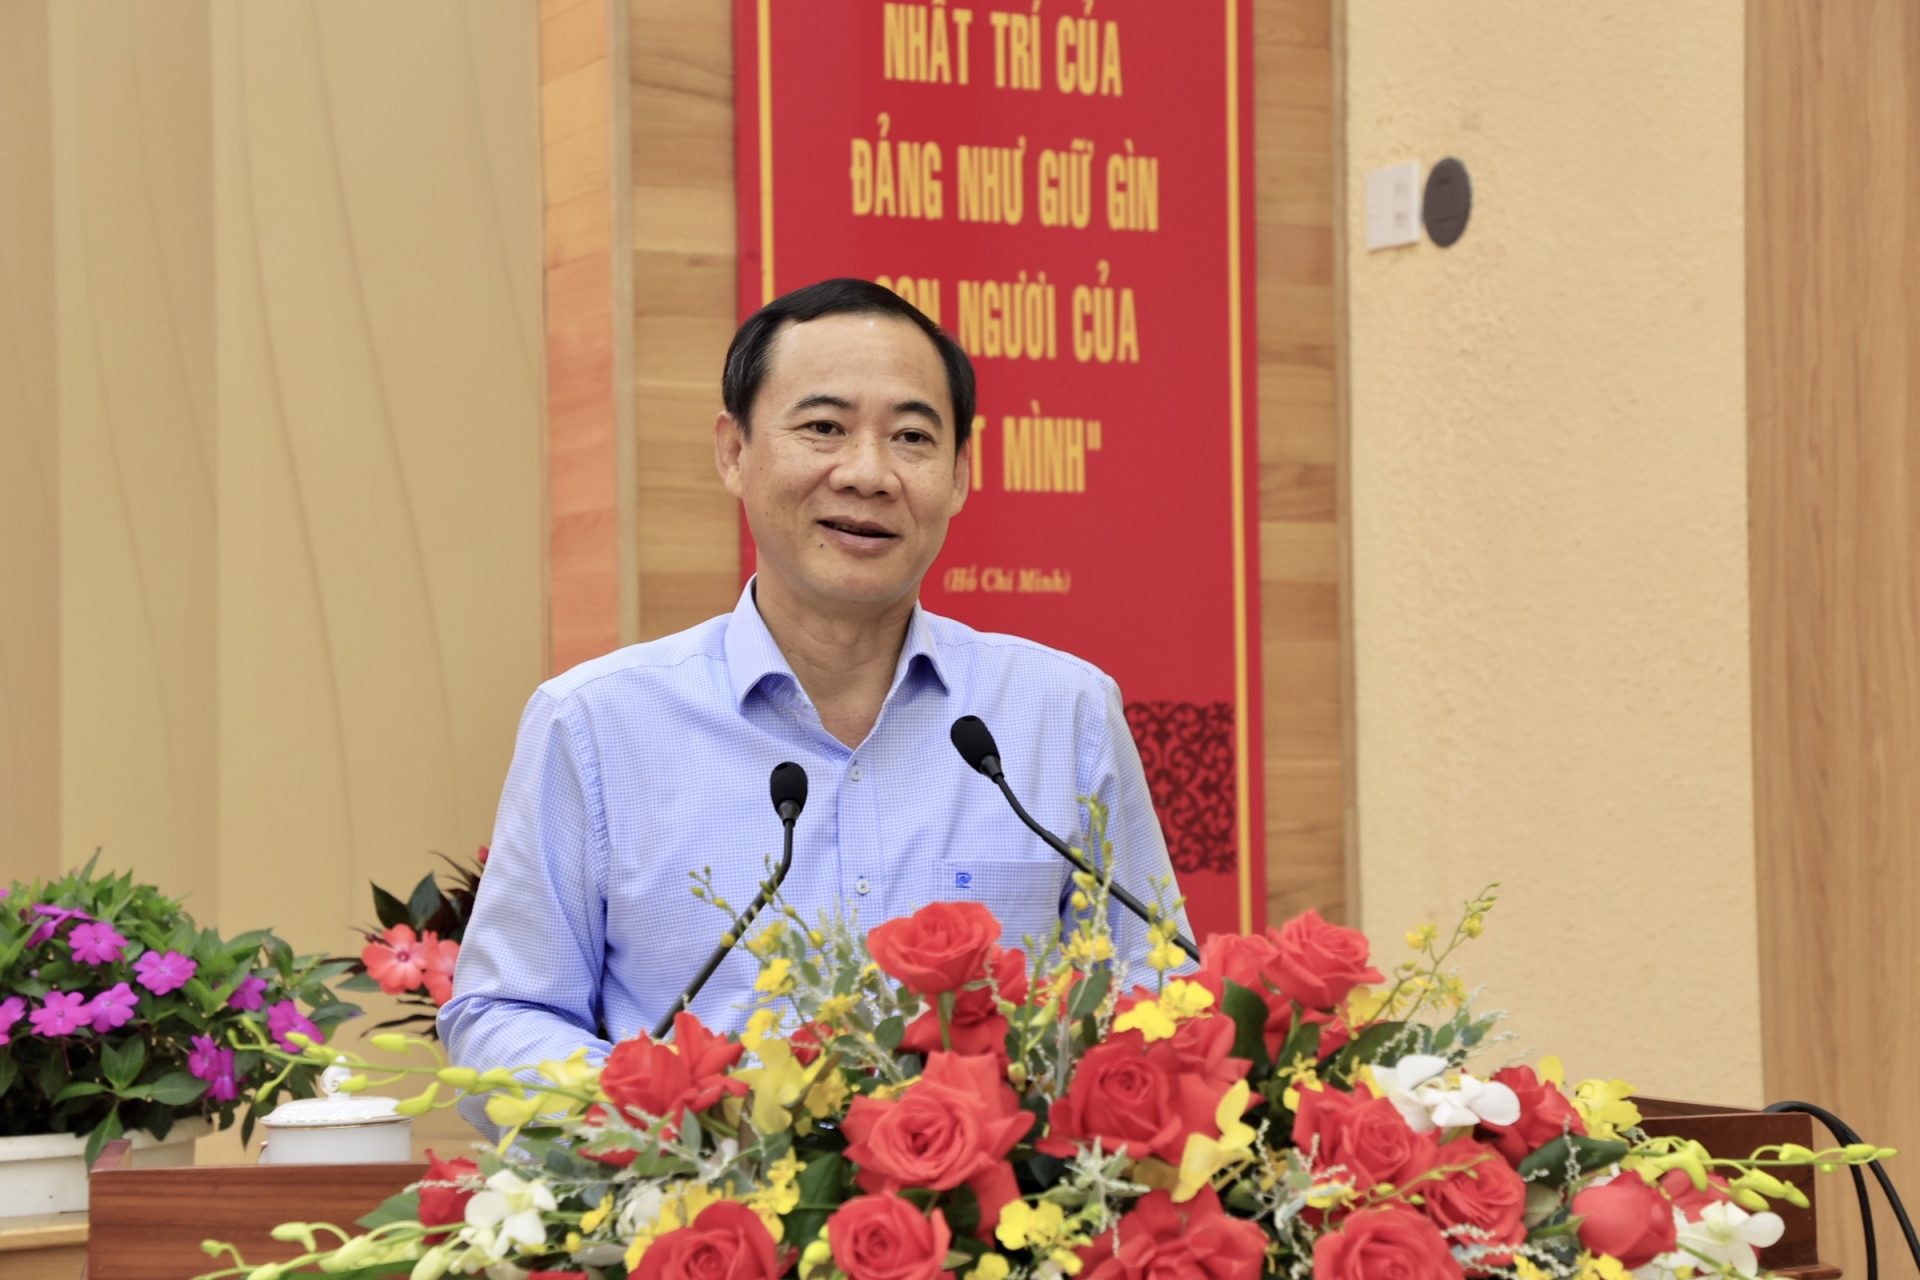 Đồng chí Nguyễn Thái Học - Quyền Bí thư Tỉnh uỷ Lâm Đồng, phát biểu bế mạc Hội nghị